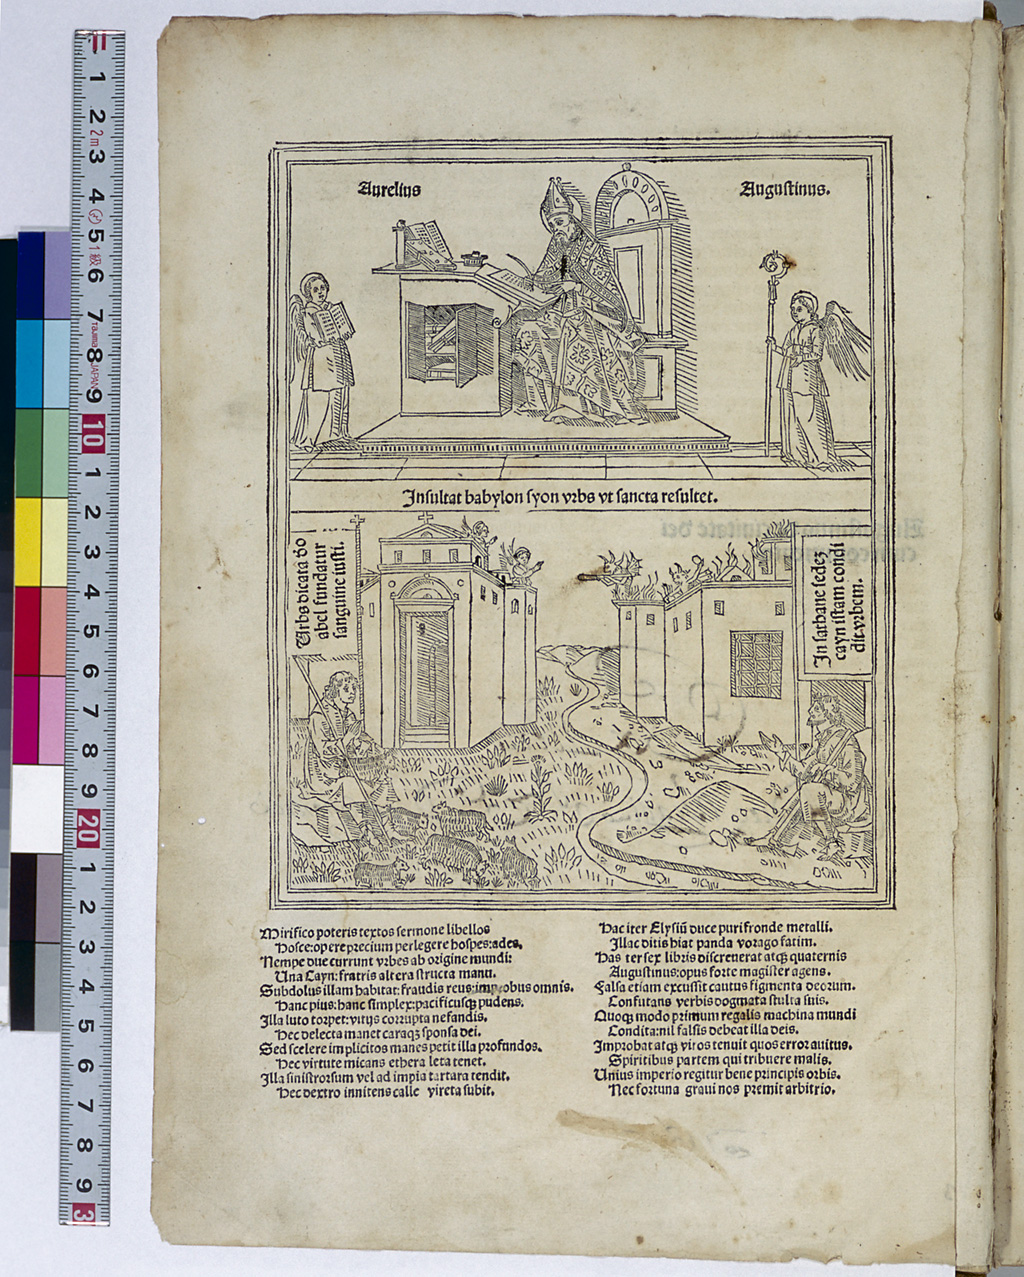 De civitate dei by Aurelius Augustinus - Larger image, (1b ...